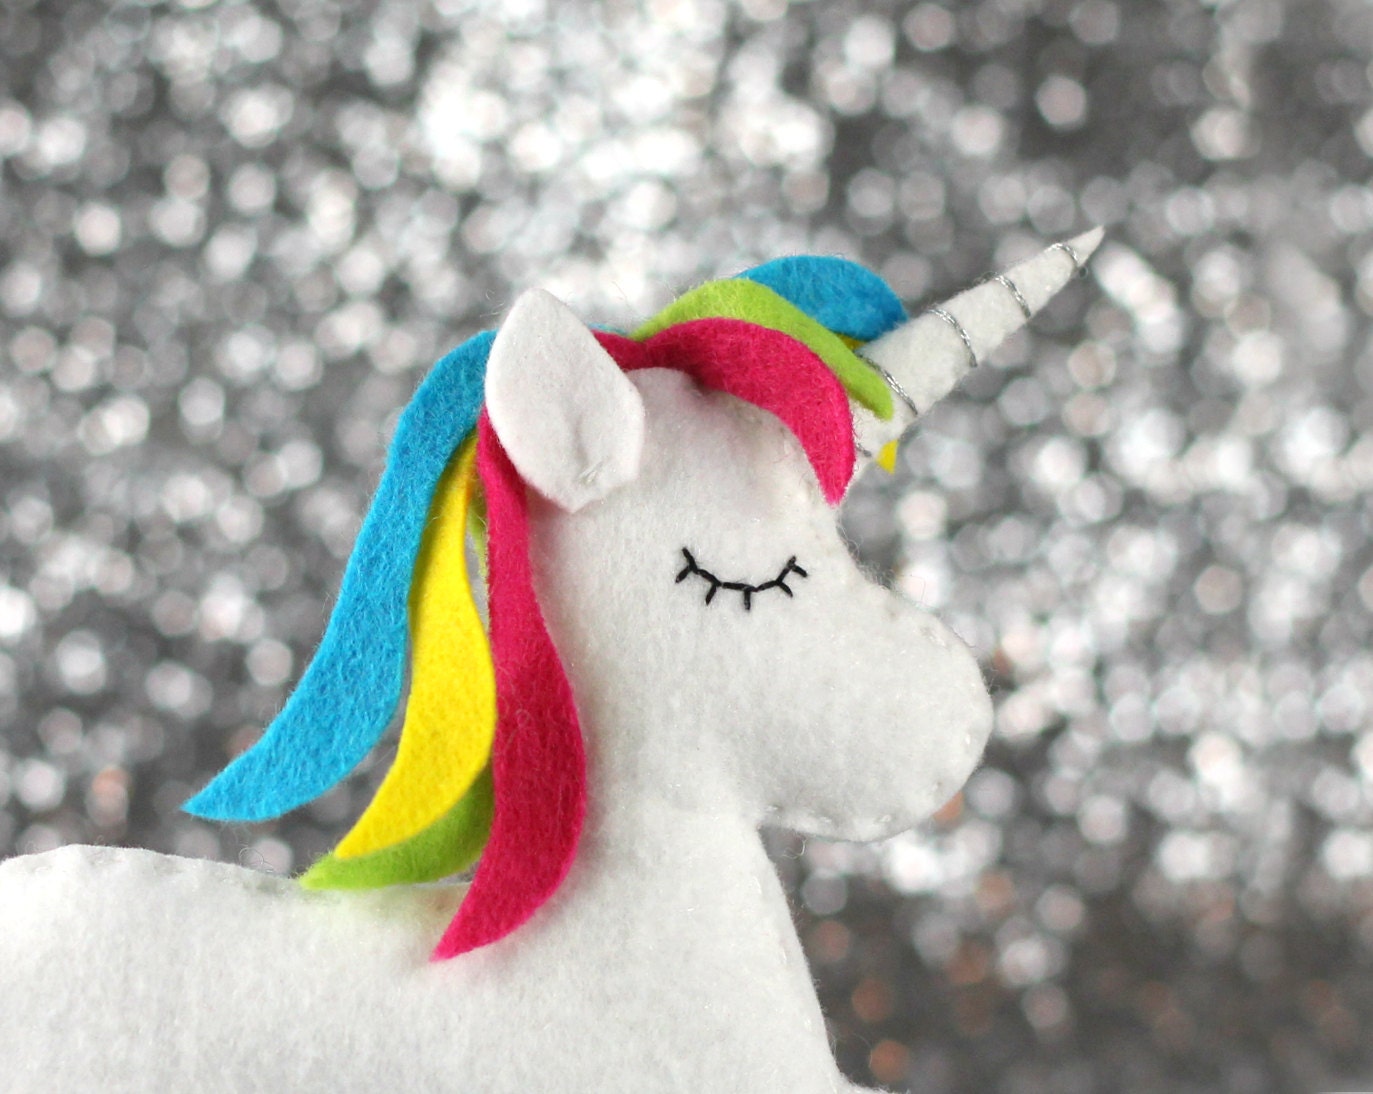 unicorn sewing pattern felt unicorn plush unicorn toy felt